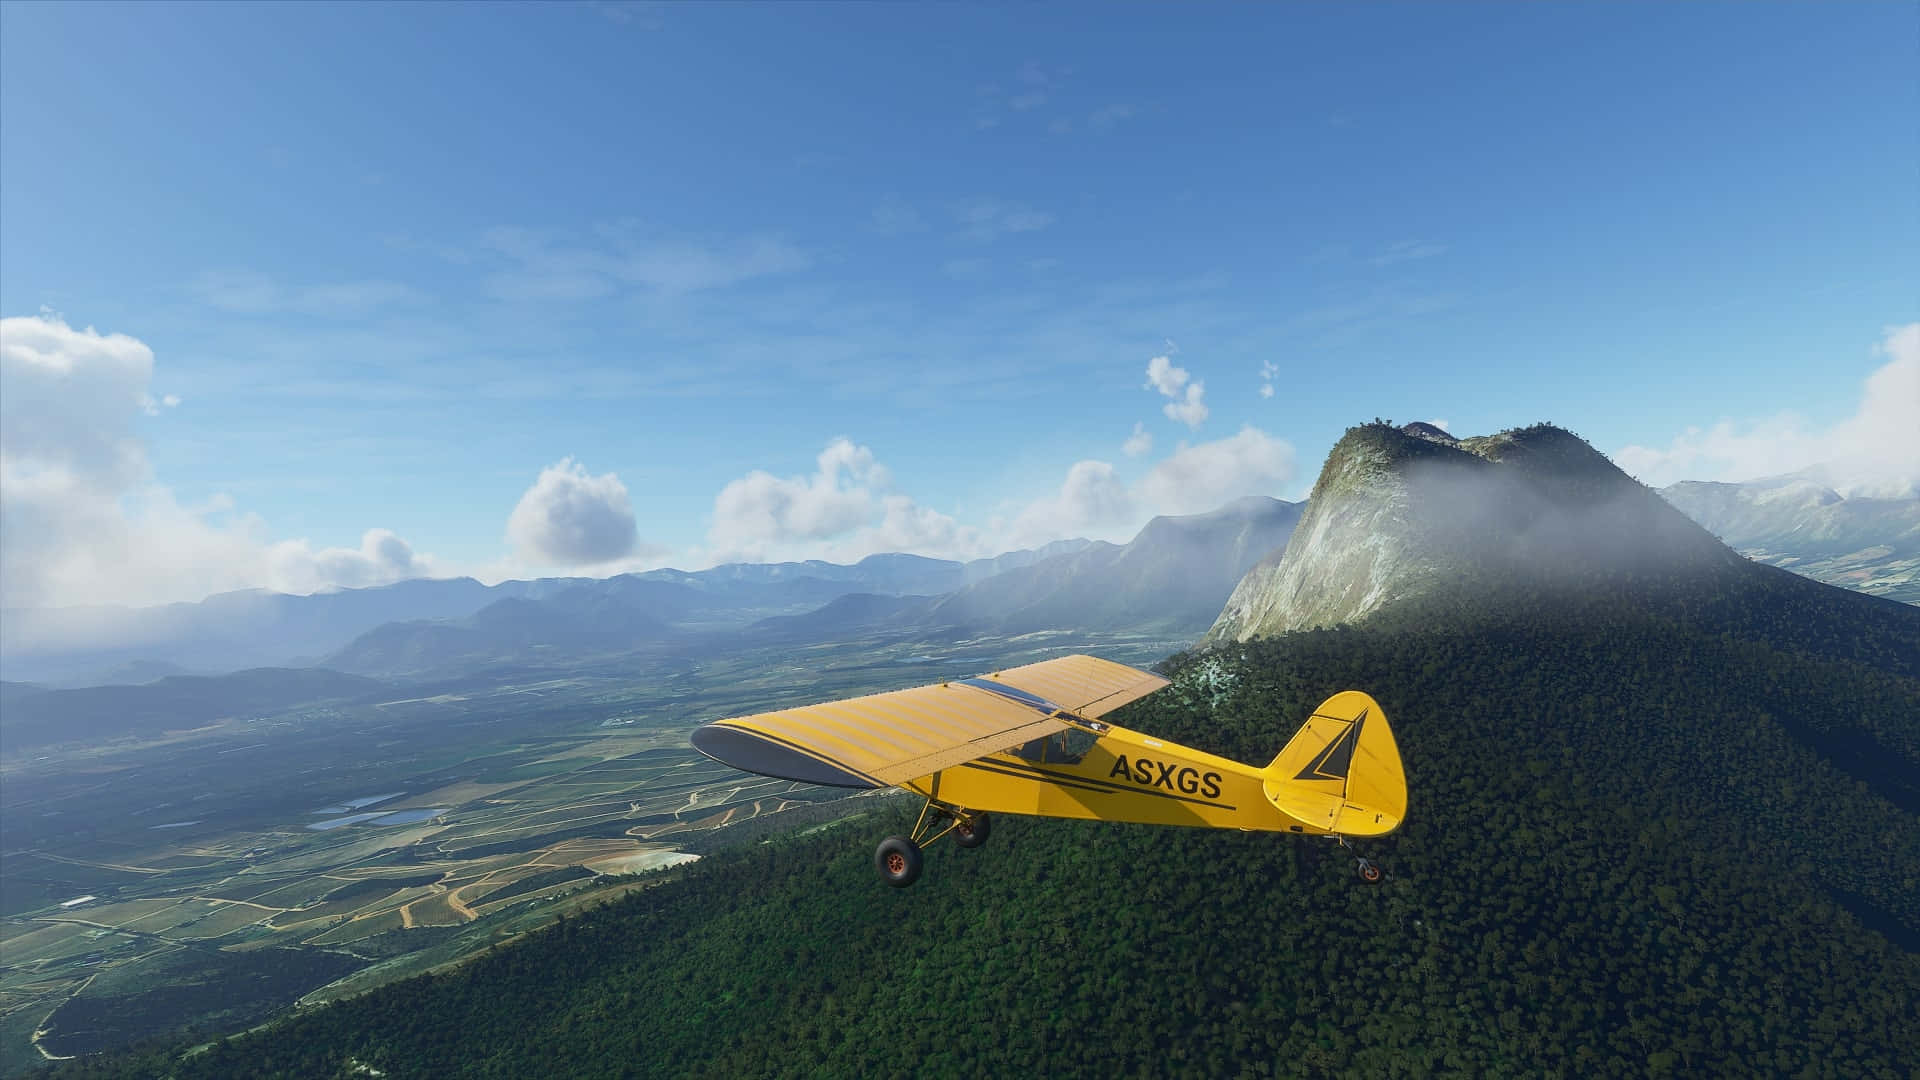 Soar through the skies in 1080p Microsoft Flight Simulator